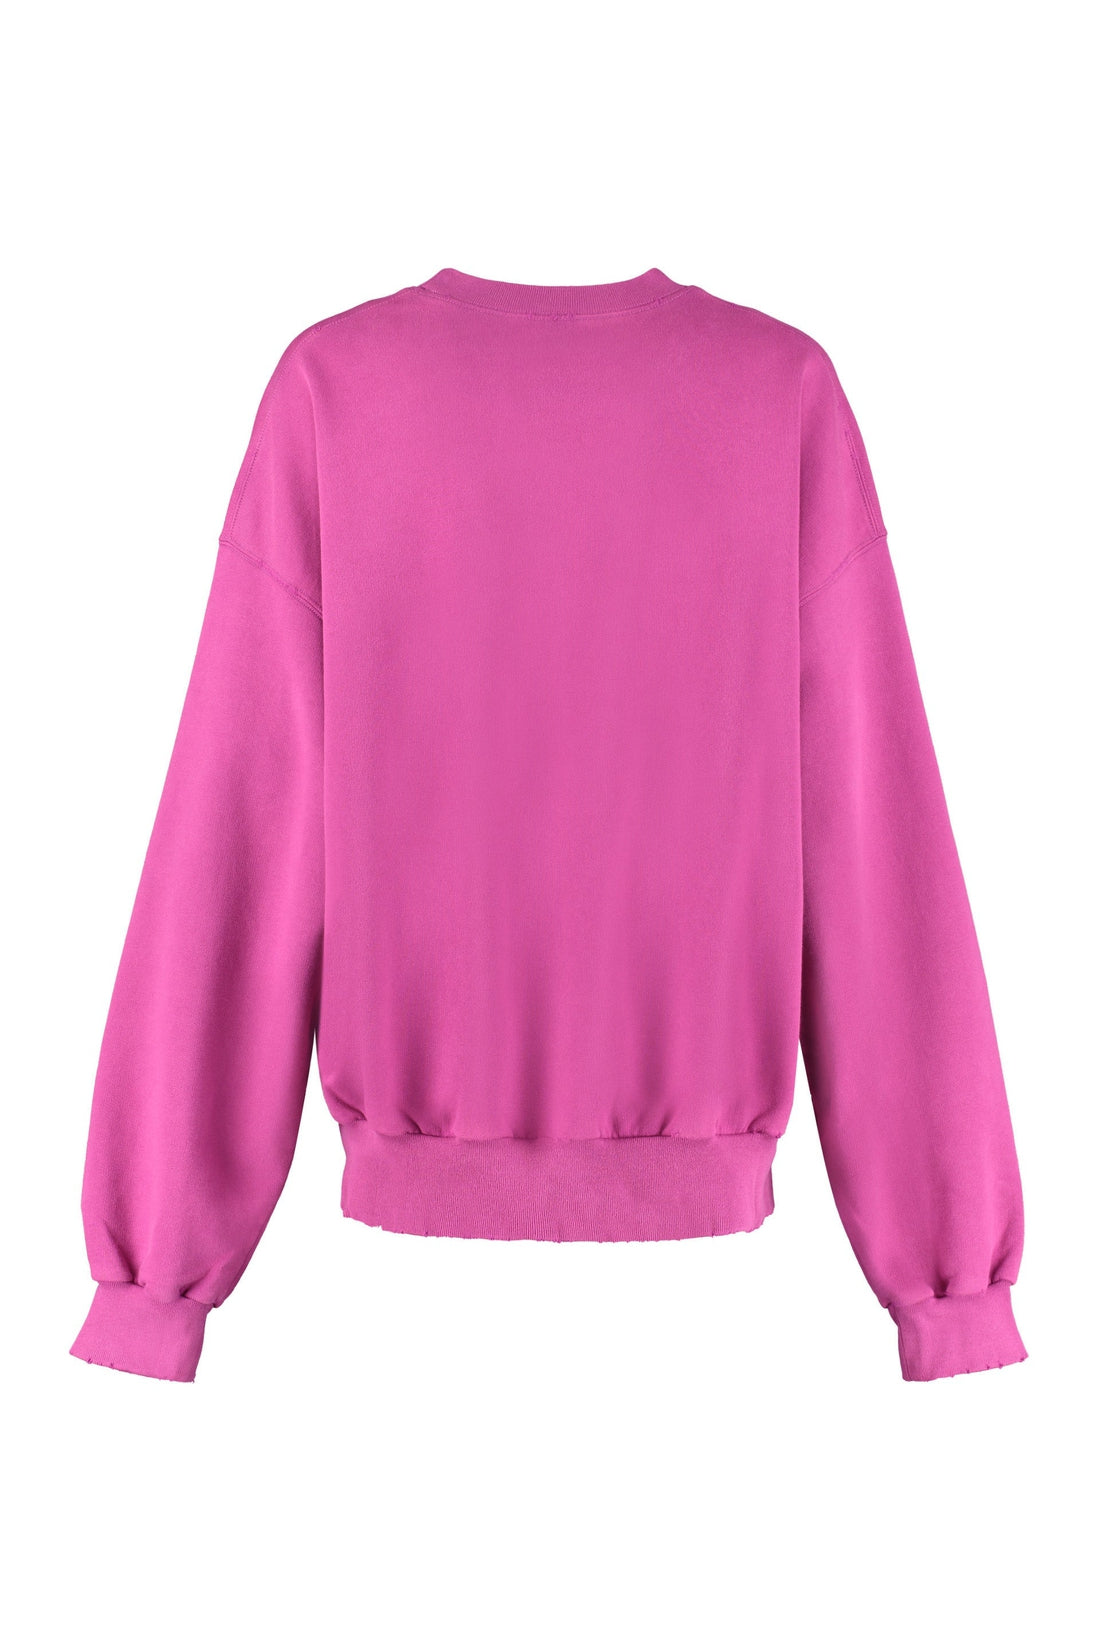 Balenciaga-OUTLET-SALE-Cotton crew-neck sweatshirt-ARCHIVIST